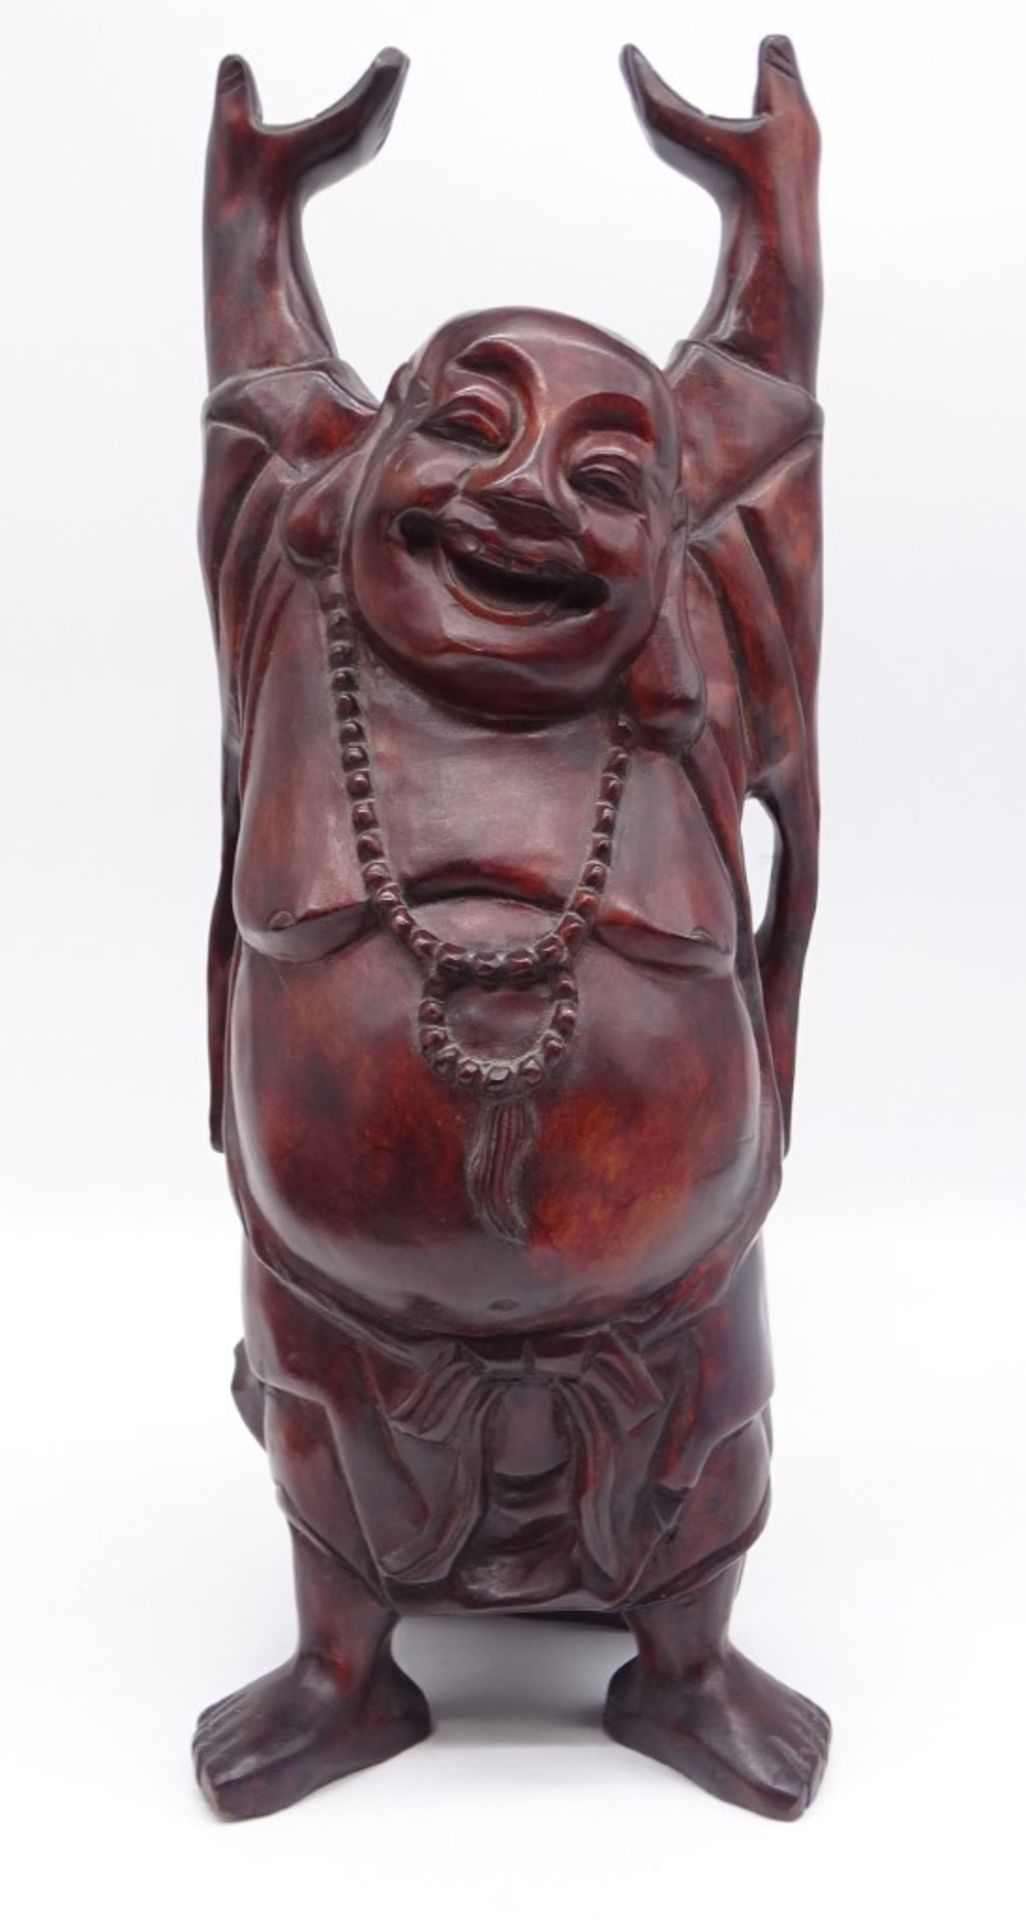 Buddahfigur aus Holz, H. 37,5 cm